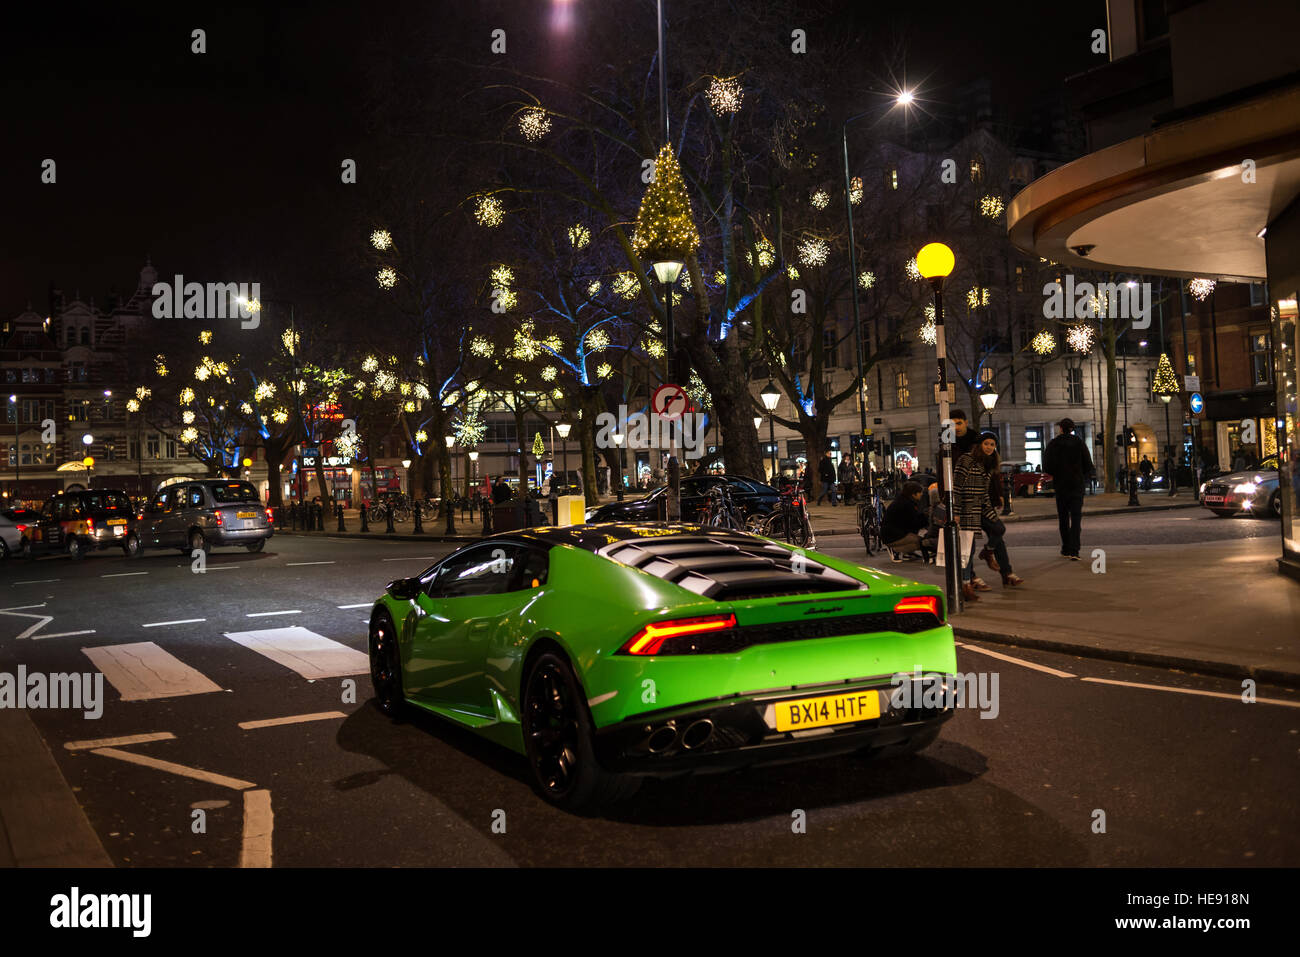 Nachtansicht des Sloane Square mit leichten Weihnachtsschmuck und große grüne Supersportwagen Lamborghini vorbei. Chelsea, London, UK Stockfoto